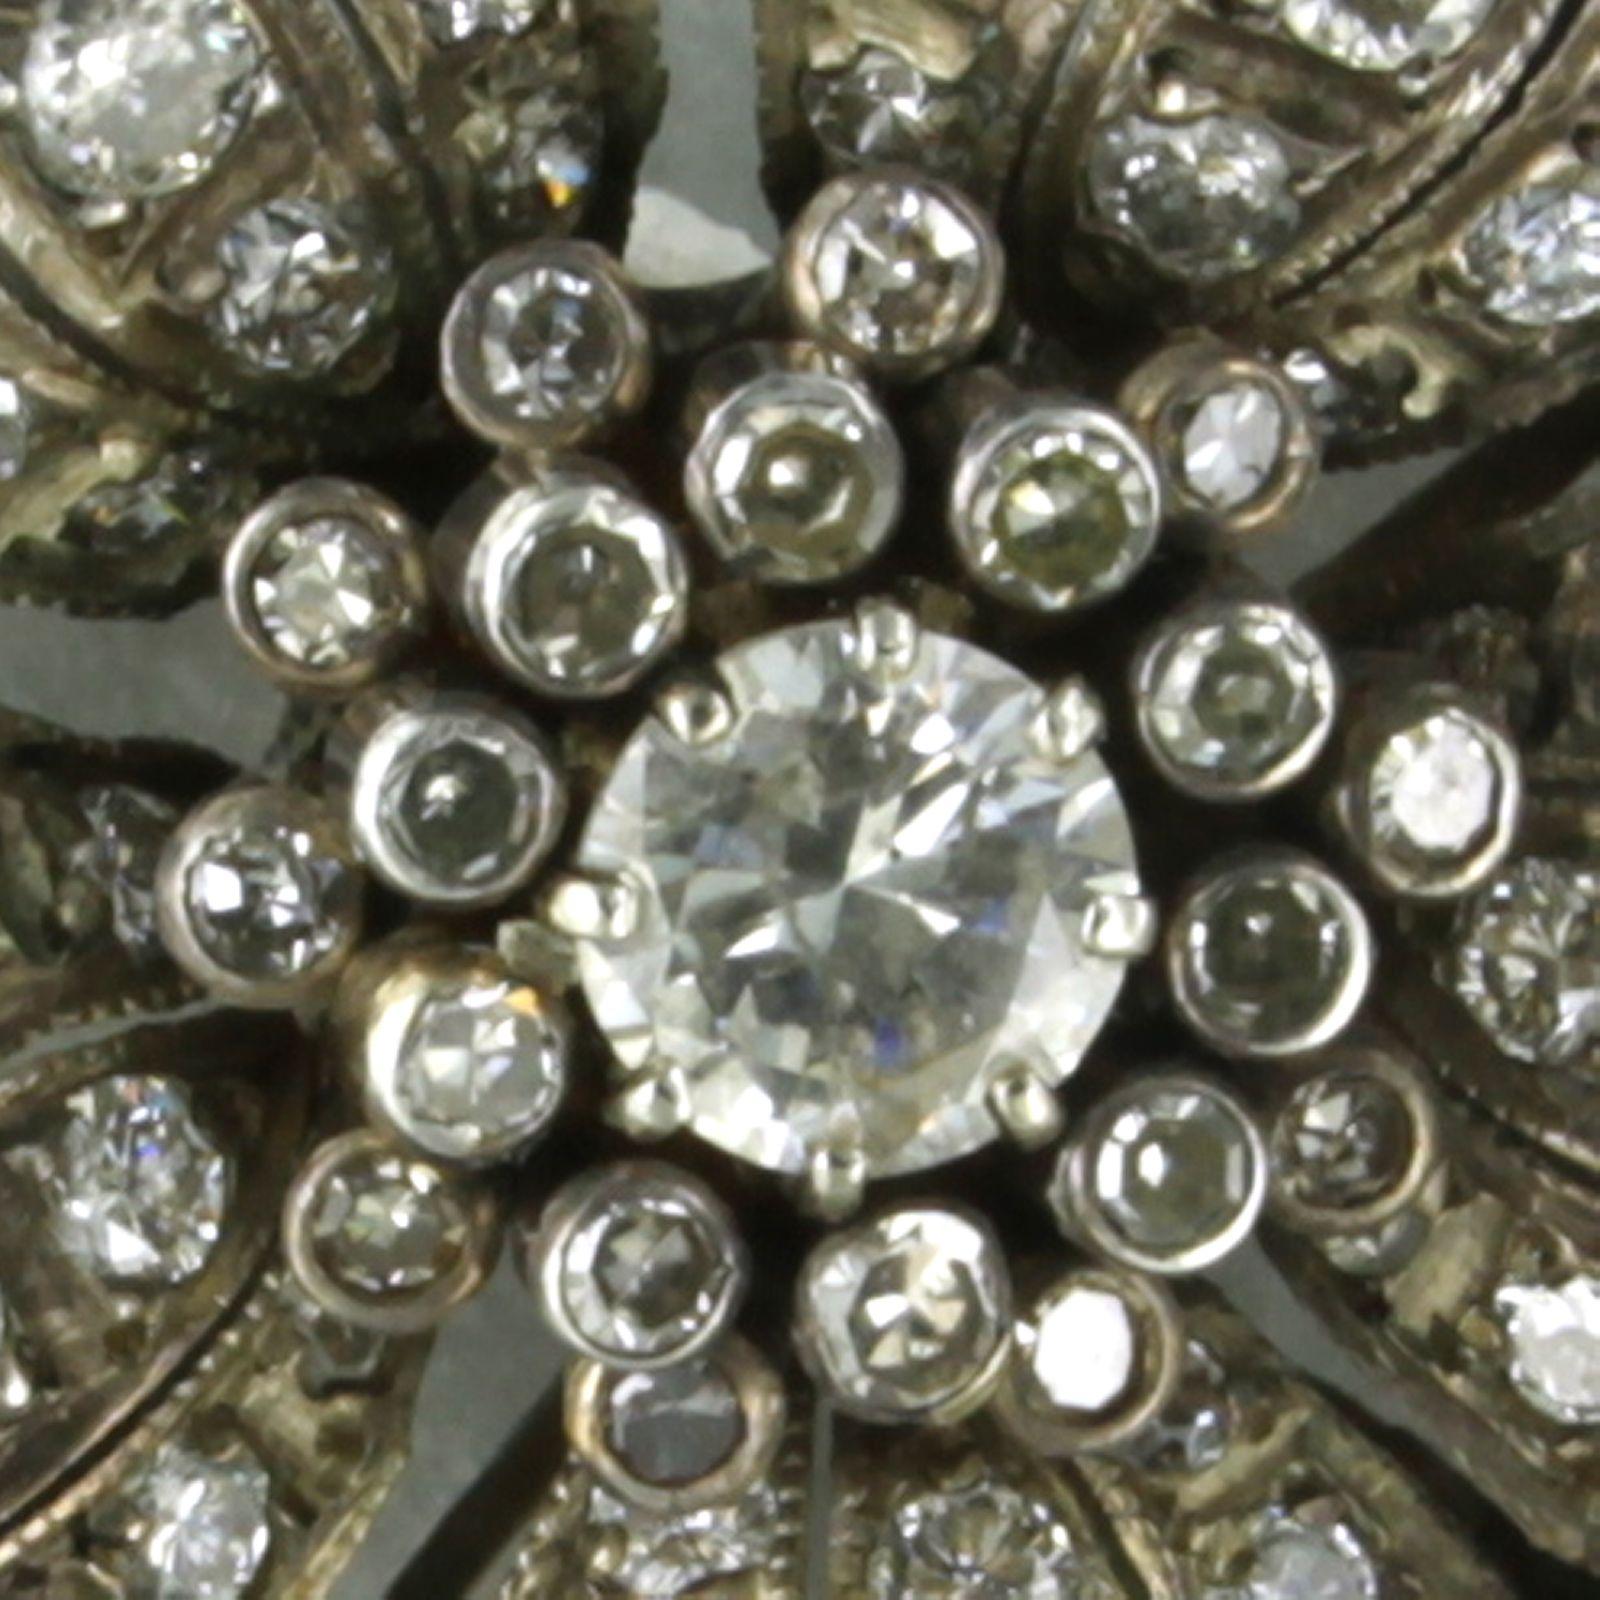 Brosche aus 14 Karat Gold und Silber, besetzt mit Diamanten im Brillant- und Einzelschliff. 2,60ct

detaillierte Beschreibung:

Die Brosche hat einen Durchmesser von 3,2 cm breit und 1,2 cm tief

Gewicht 14,7 Gramm

beschäftigt mit

- 1 x 5,8 mm